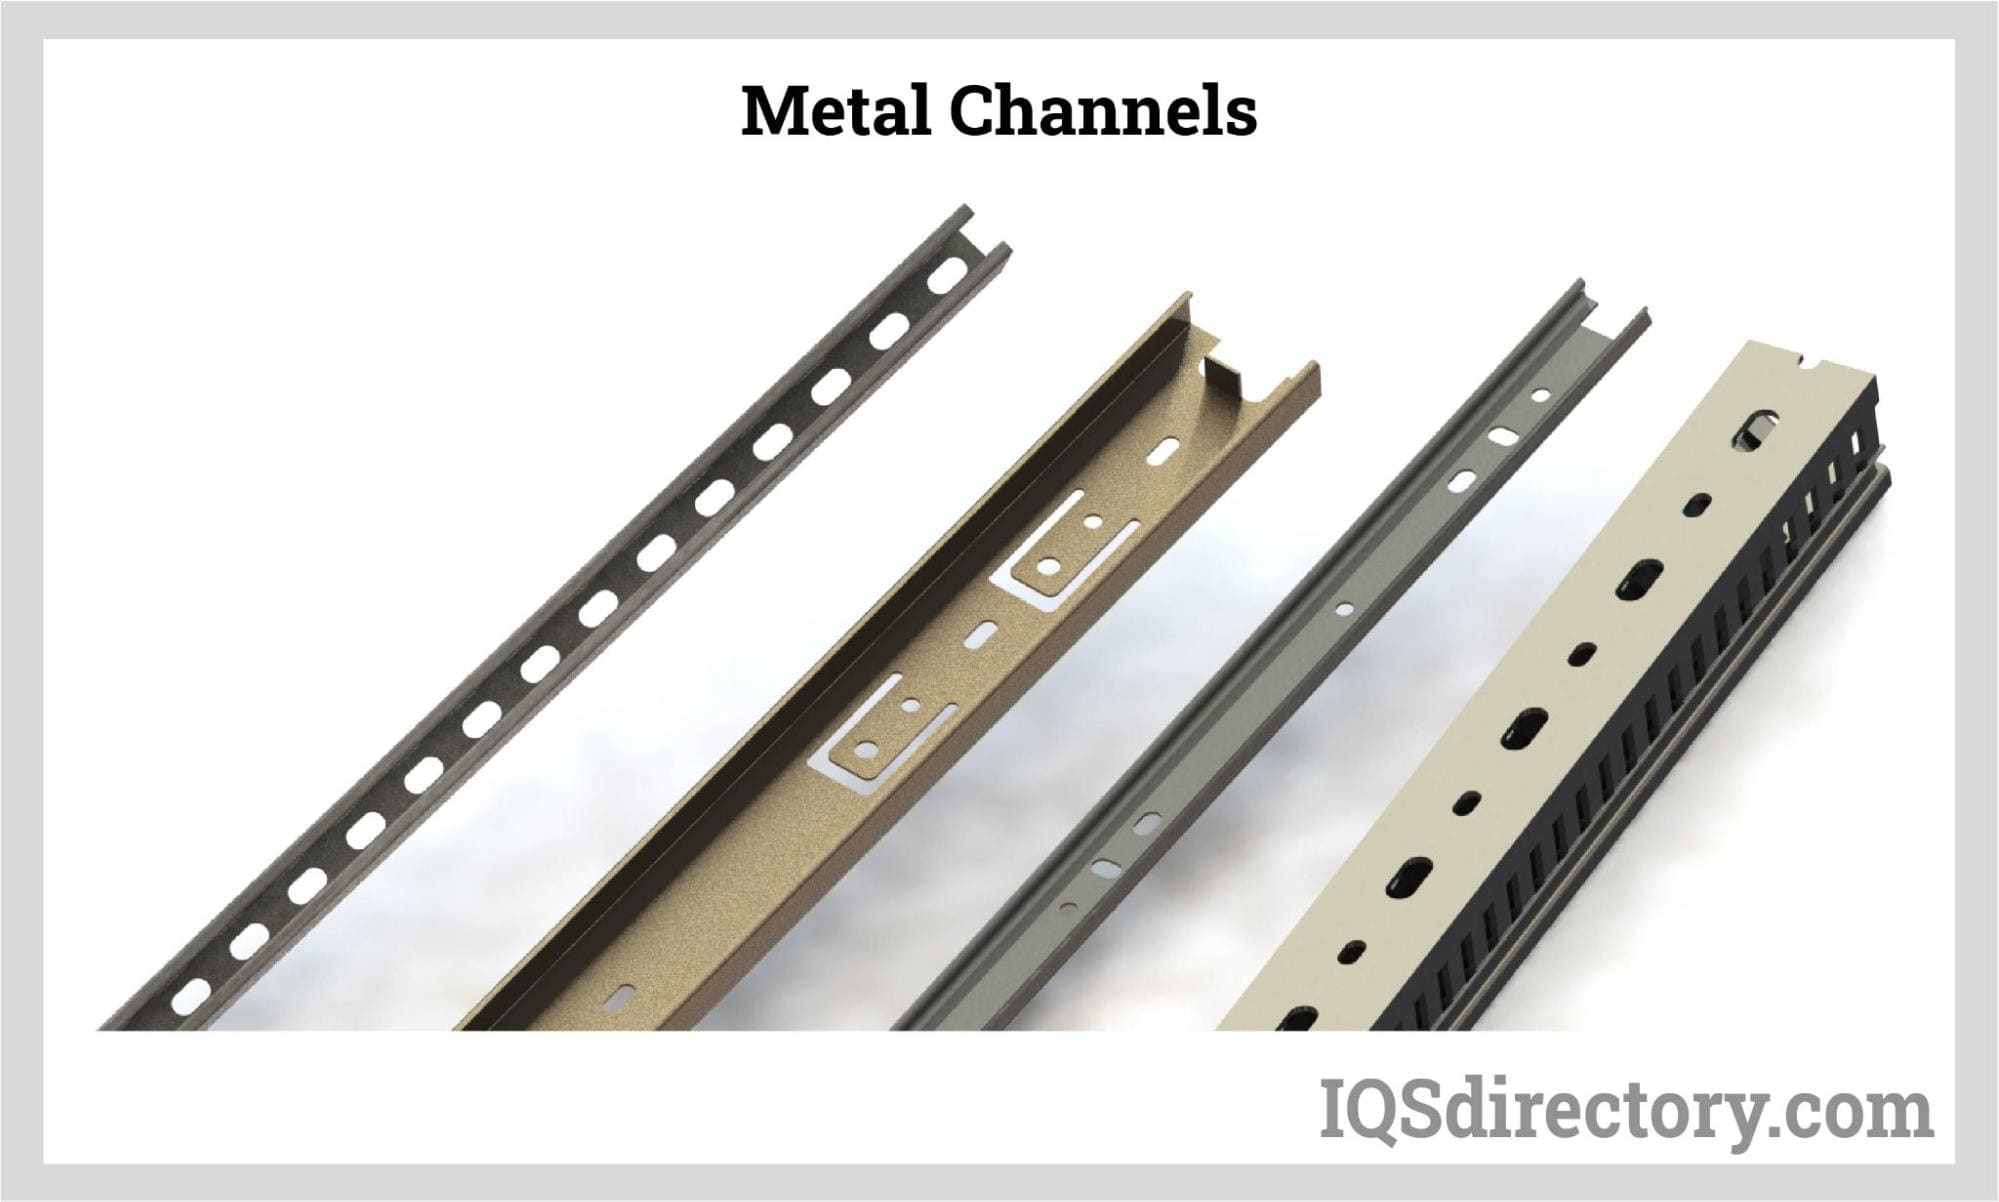 Metal Channels